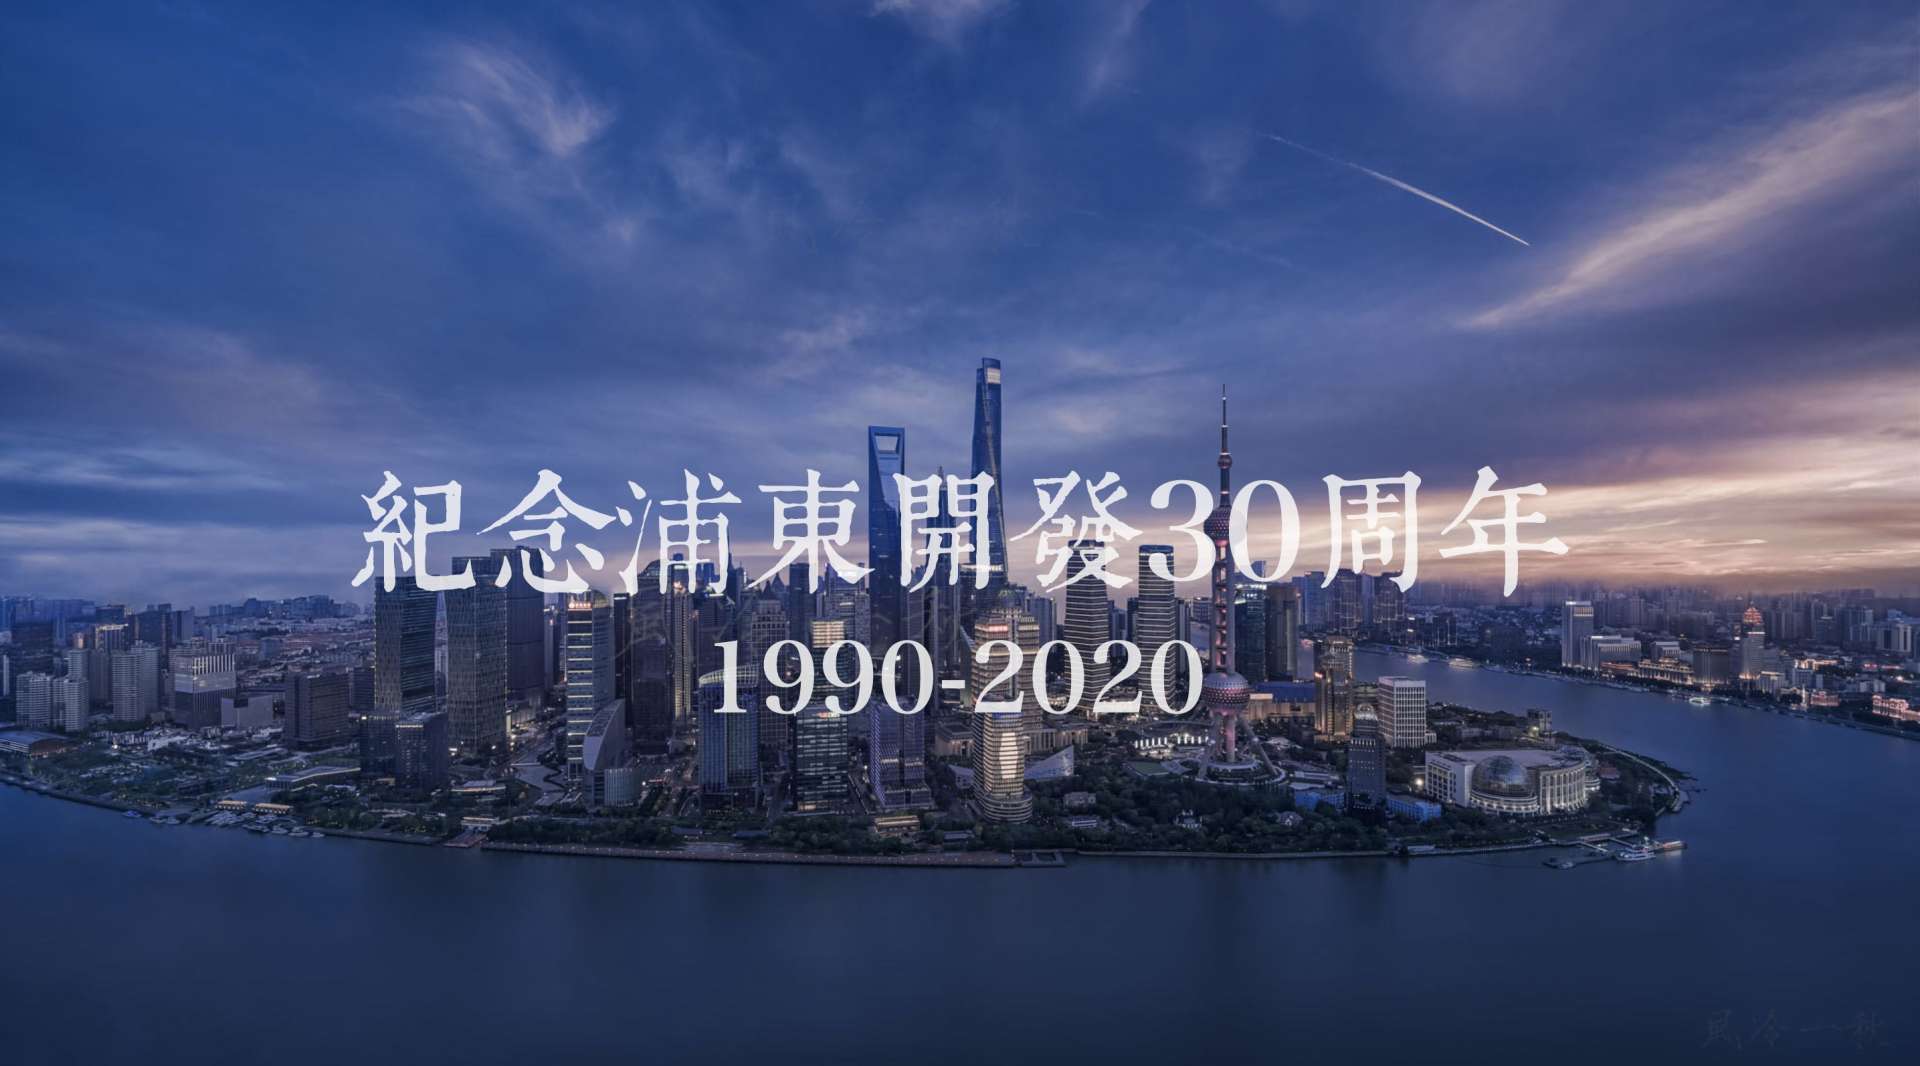 2020夜色魔都 | 震撼航拍上海/浦东开发30周年